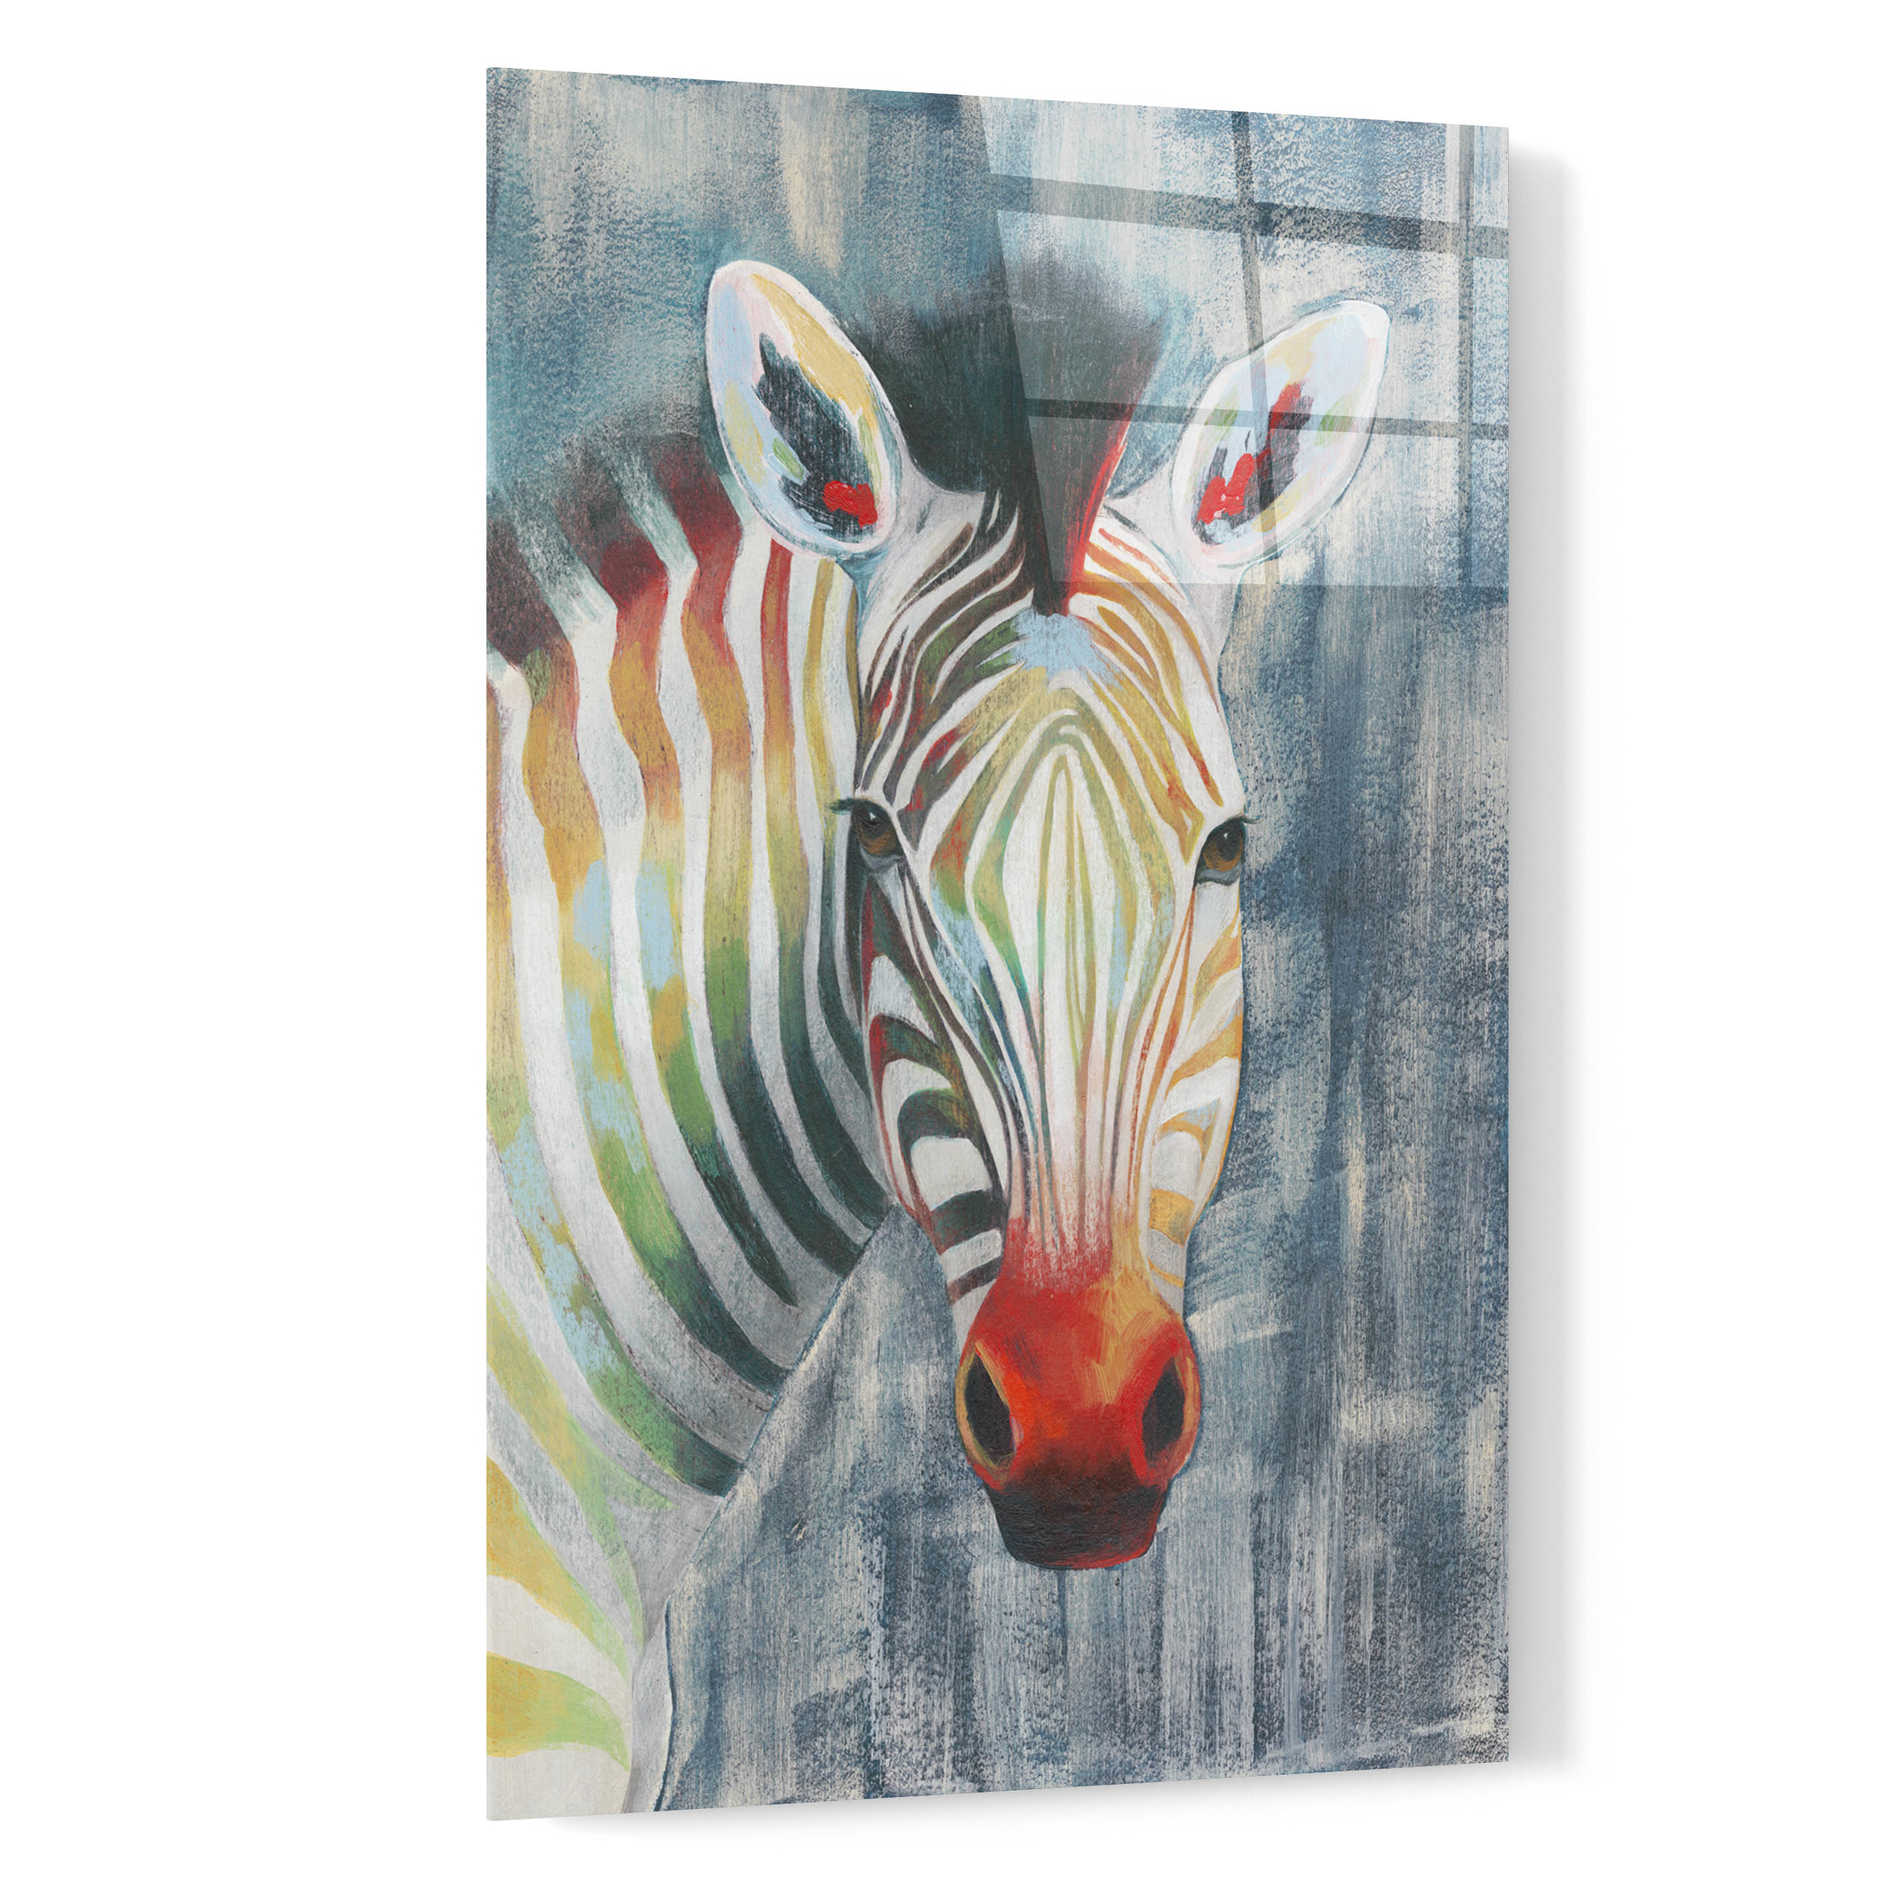 Epic Art 'Prism Zebra I' by Grace Popp, Acrylic Wall Glass,16x24